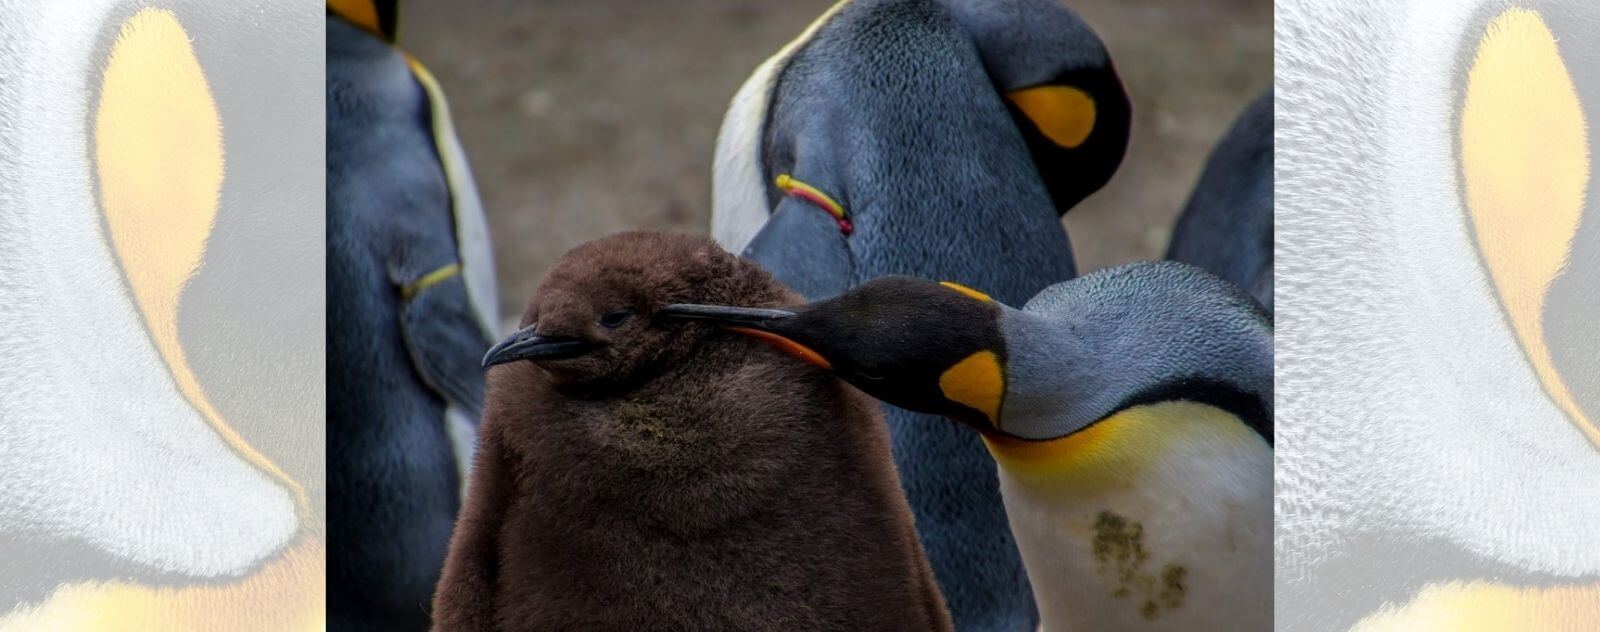 Los pingüinos son pájaros y tienen plumas negras, grises, naranjas y amarillas.